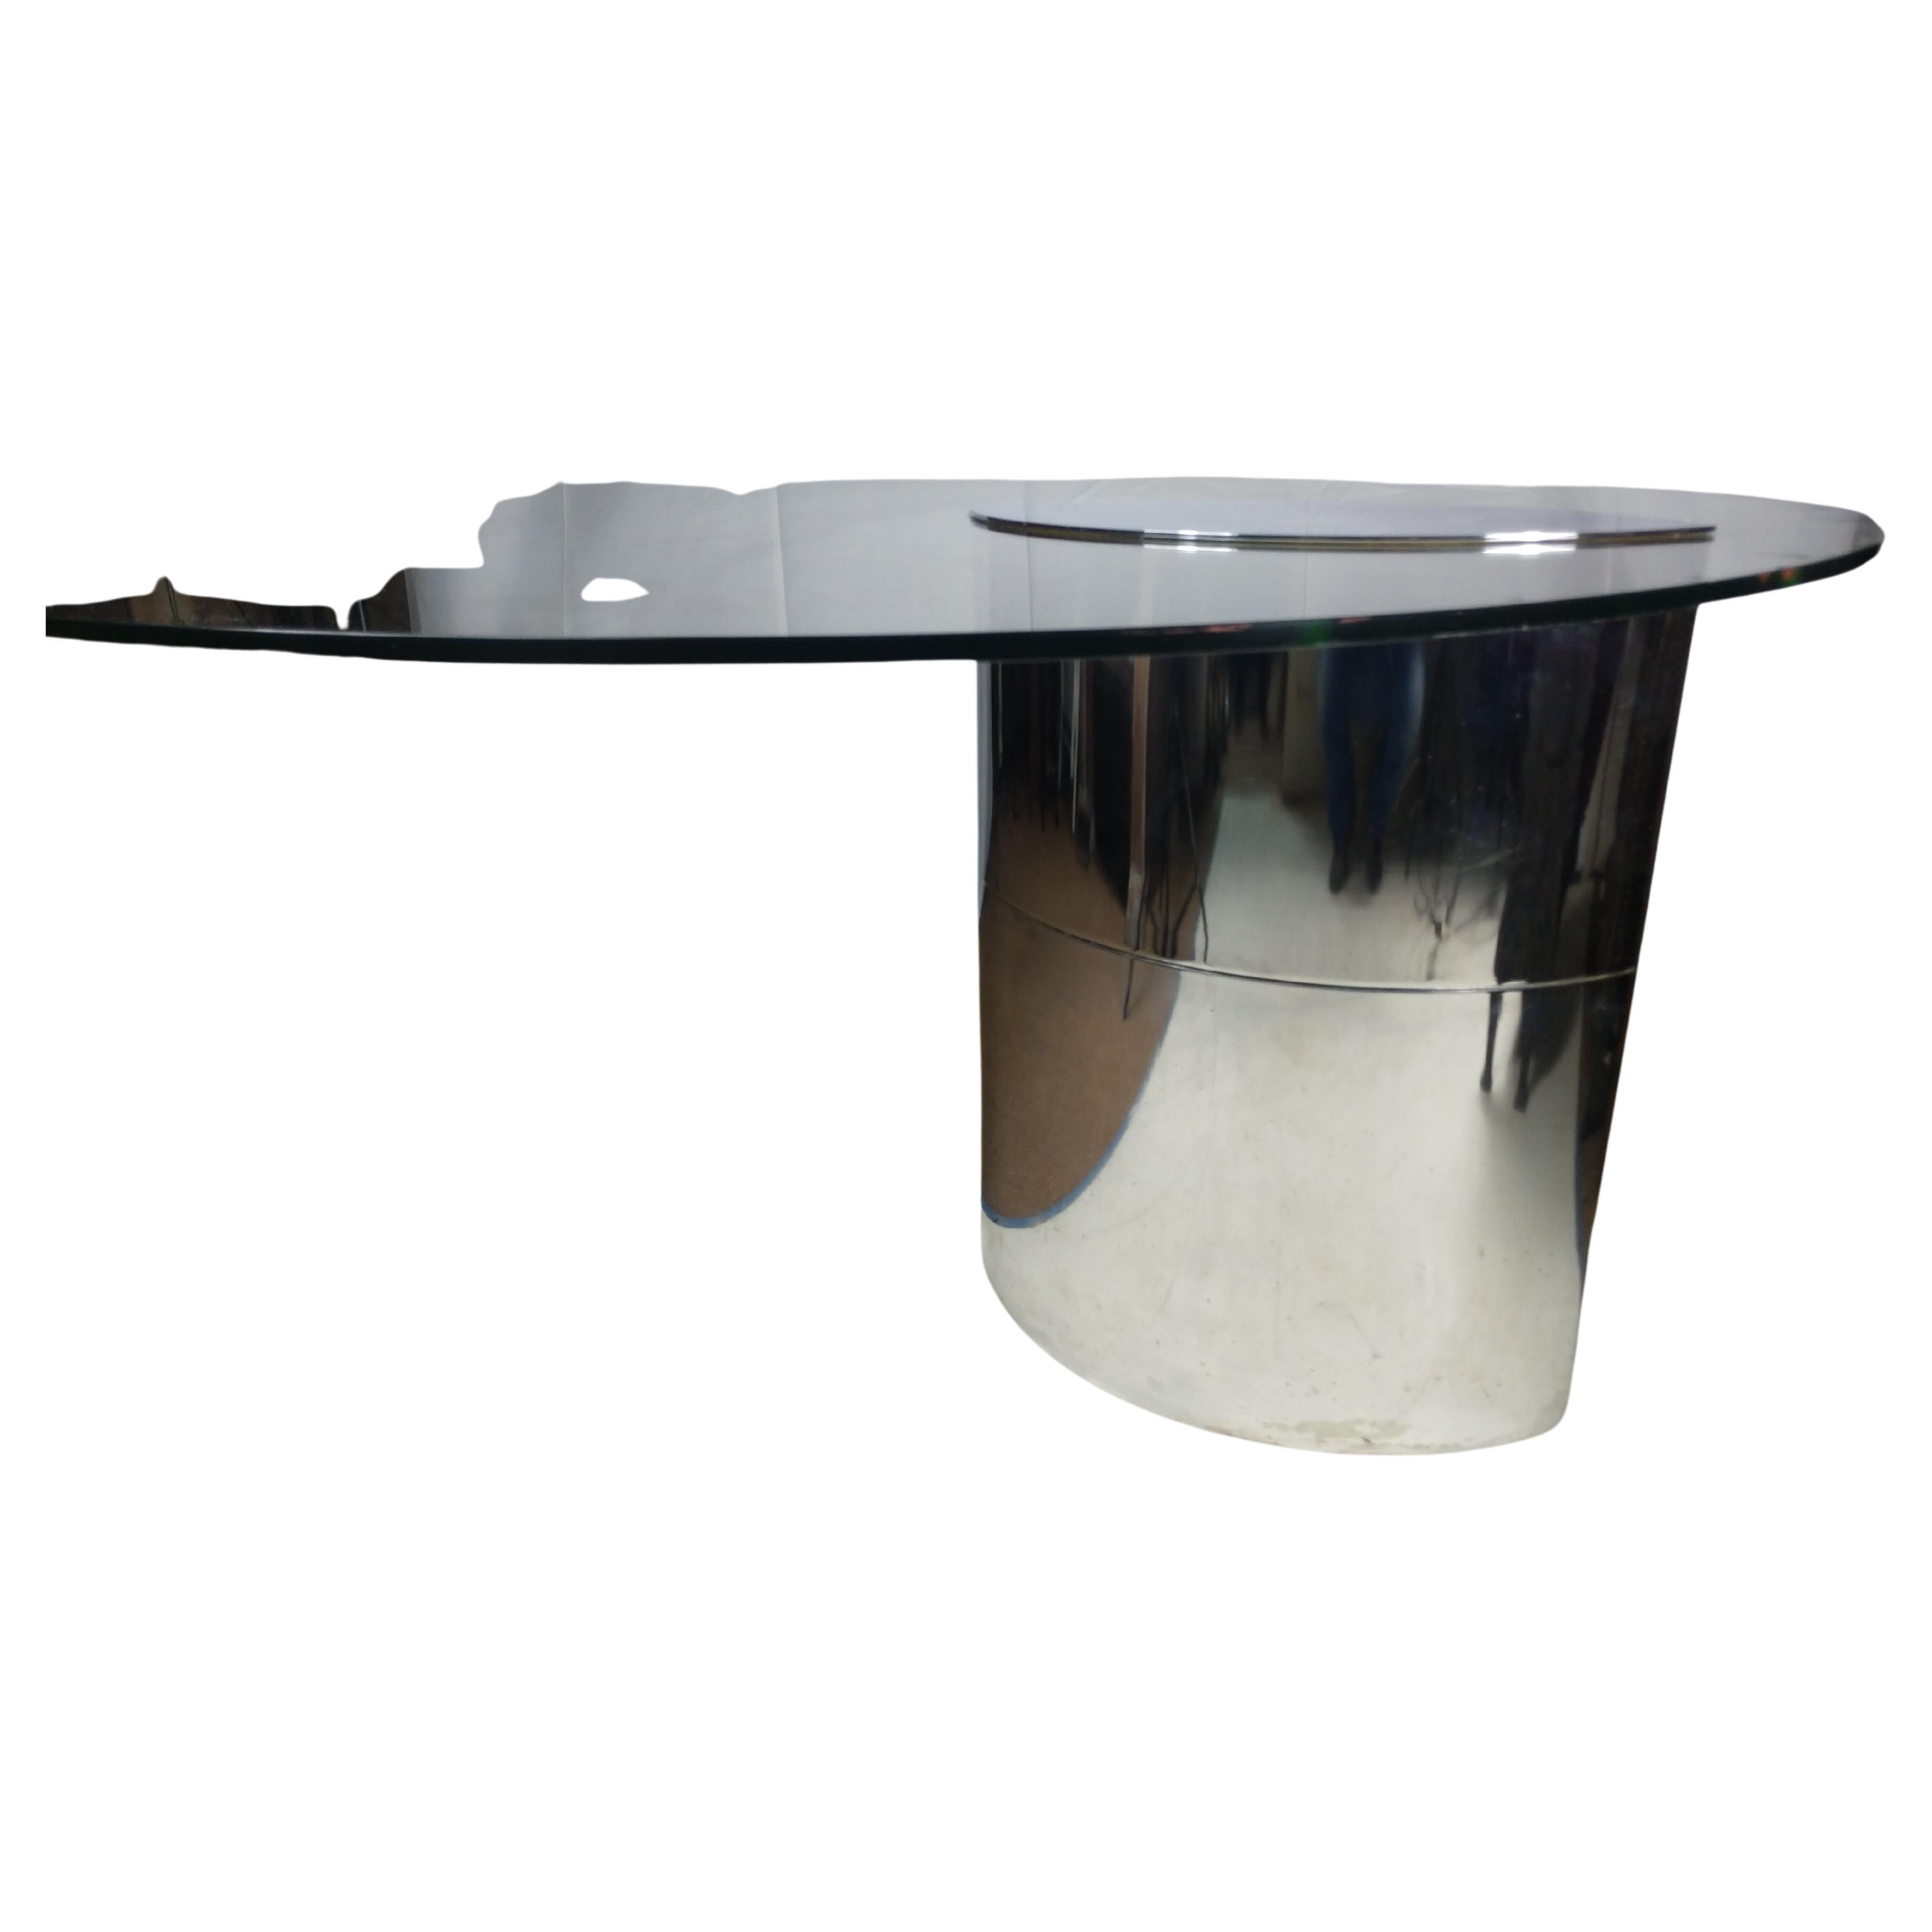 Fabuleuse table ronde en verre de 59 pouces de diamètre qui repose en porte-à-faux sur une base en acier inoxydable. Verrouillée à l'intérieur et dotée de 5 poids robustes pour contrebalancer la table. L'acier inoxydable est en 2 sections, une